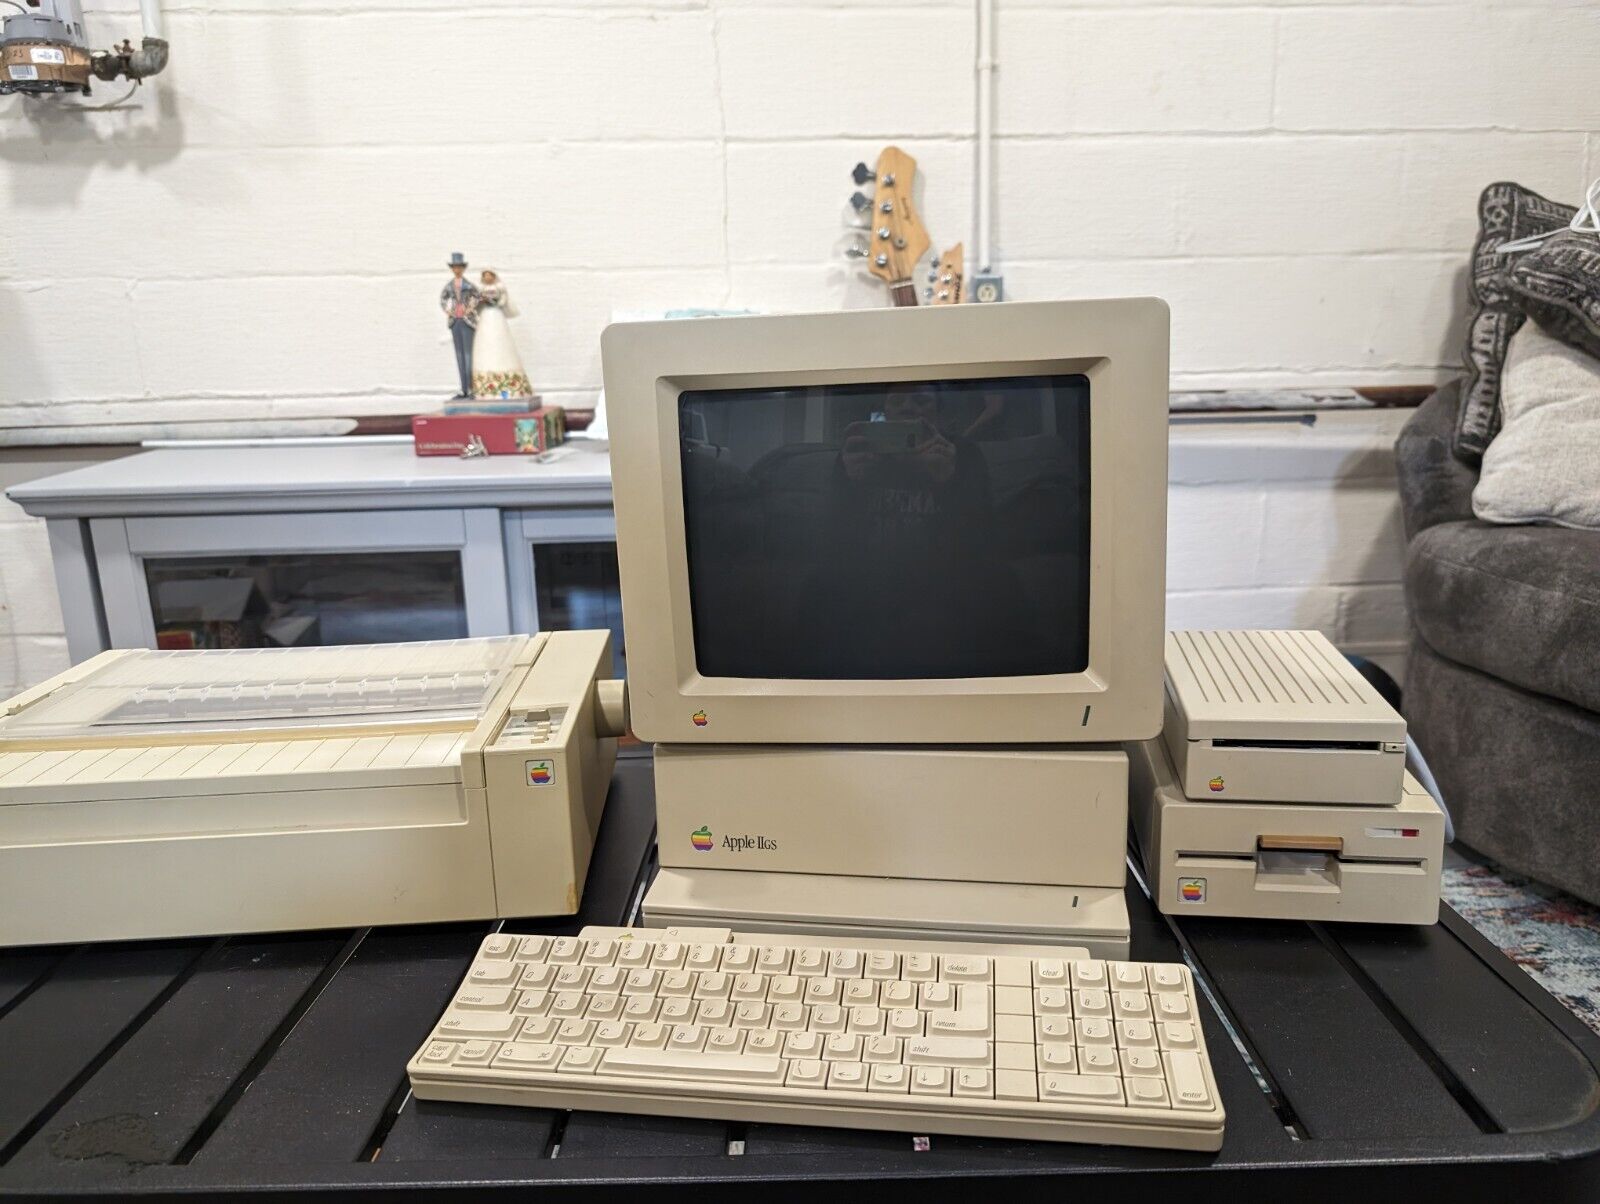 Apple IIGS Computer A2S6000, & Parts A2M6014, A9M0330, A9M0303, A9M0106, A9M0107